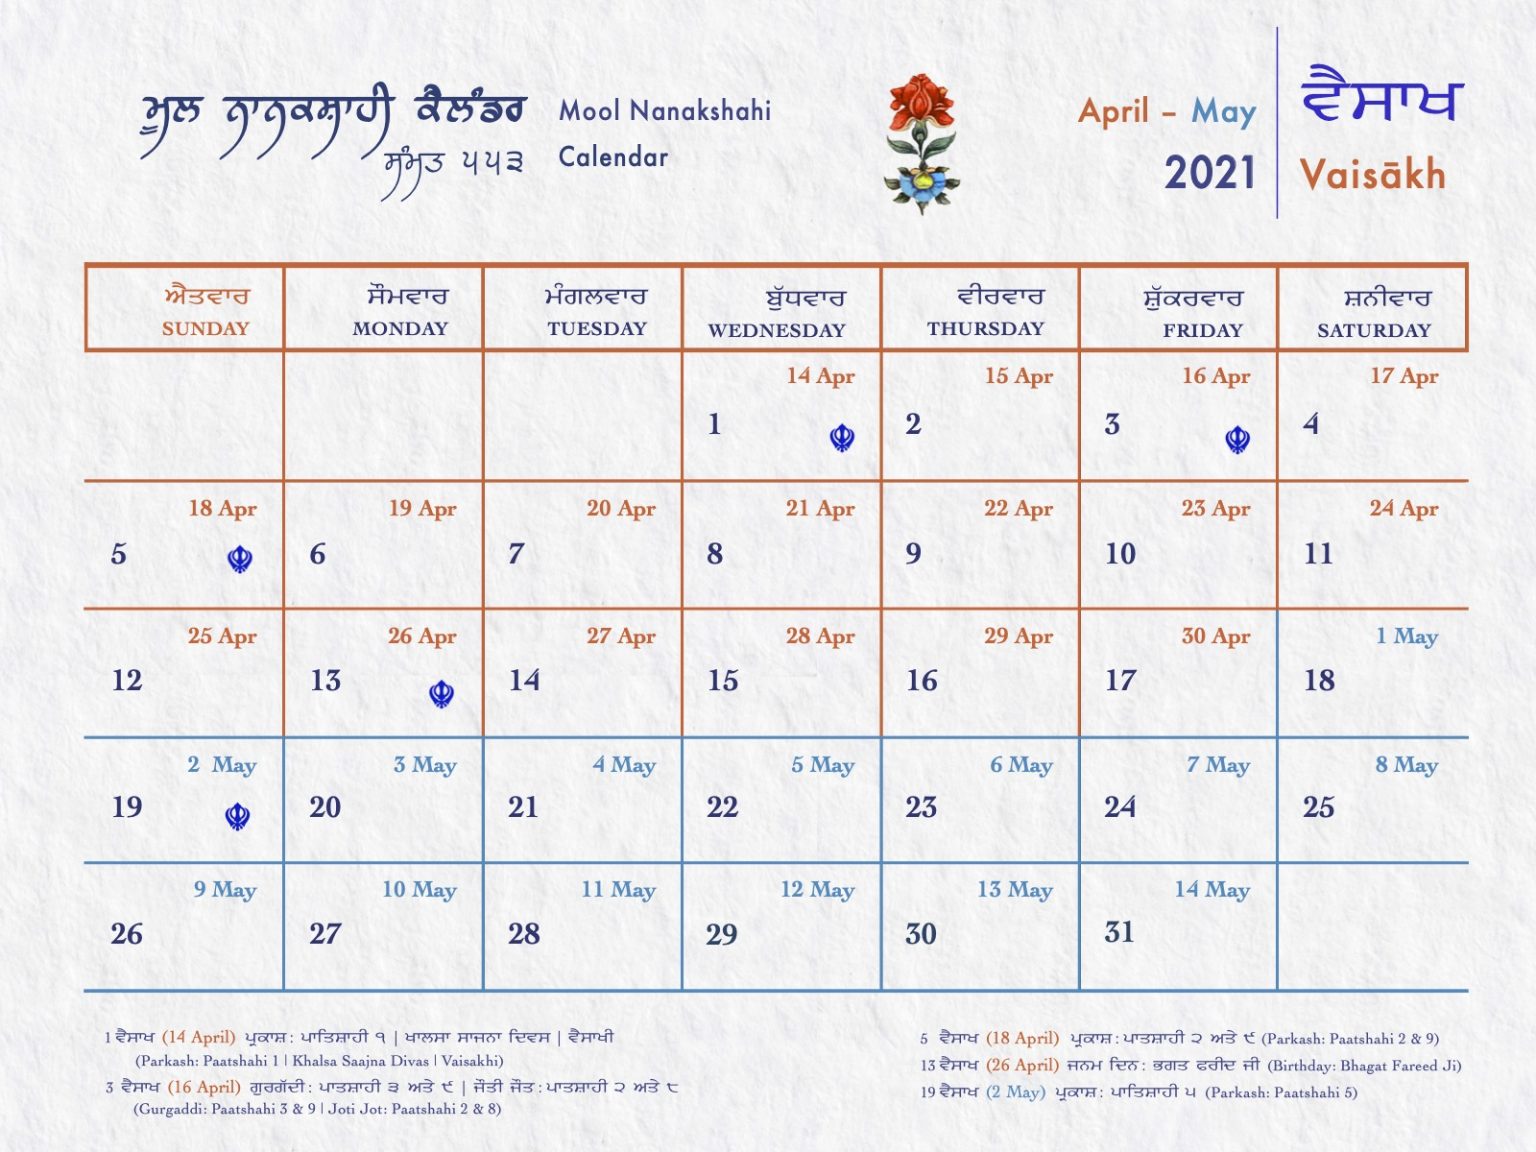 Mool Nanakshahi Calendar The Sikh Calendar Based On Gurbani, Sikh